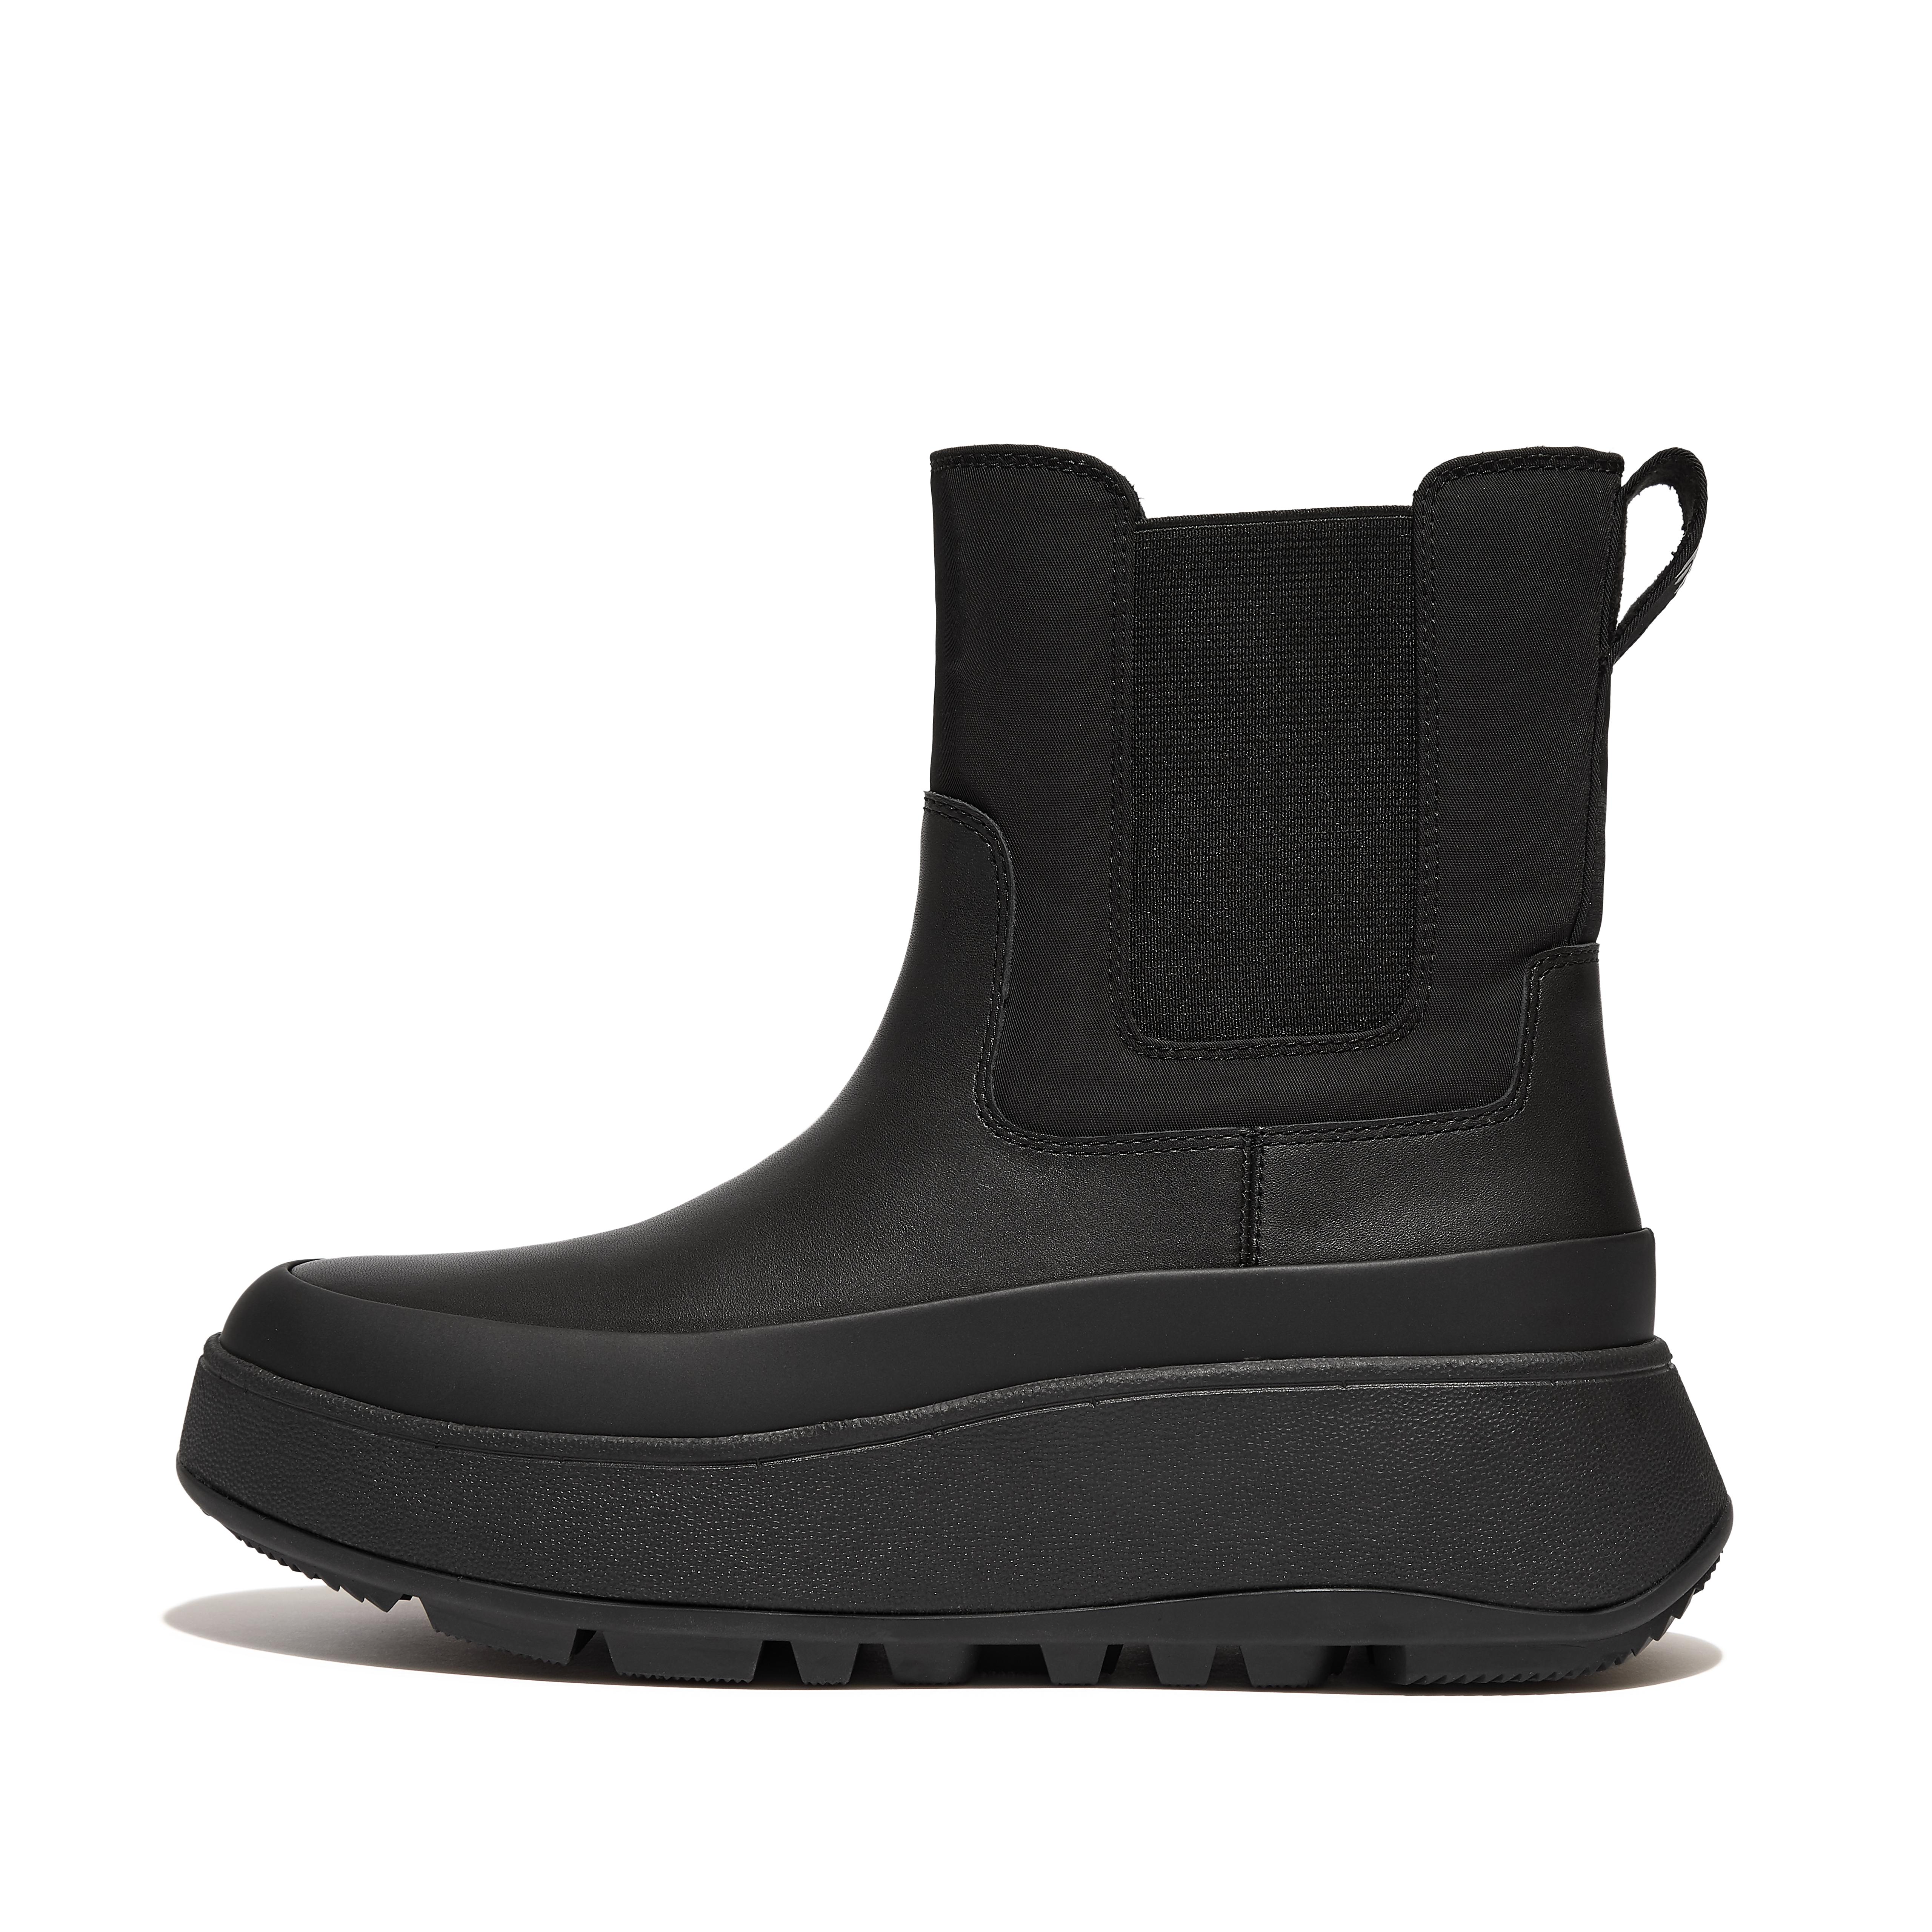 핏플랍 Fitflop Water-Resistant Fabric/Leather Flatform Chelsea Boots,All Black